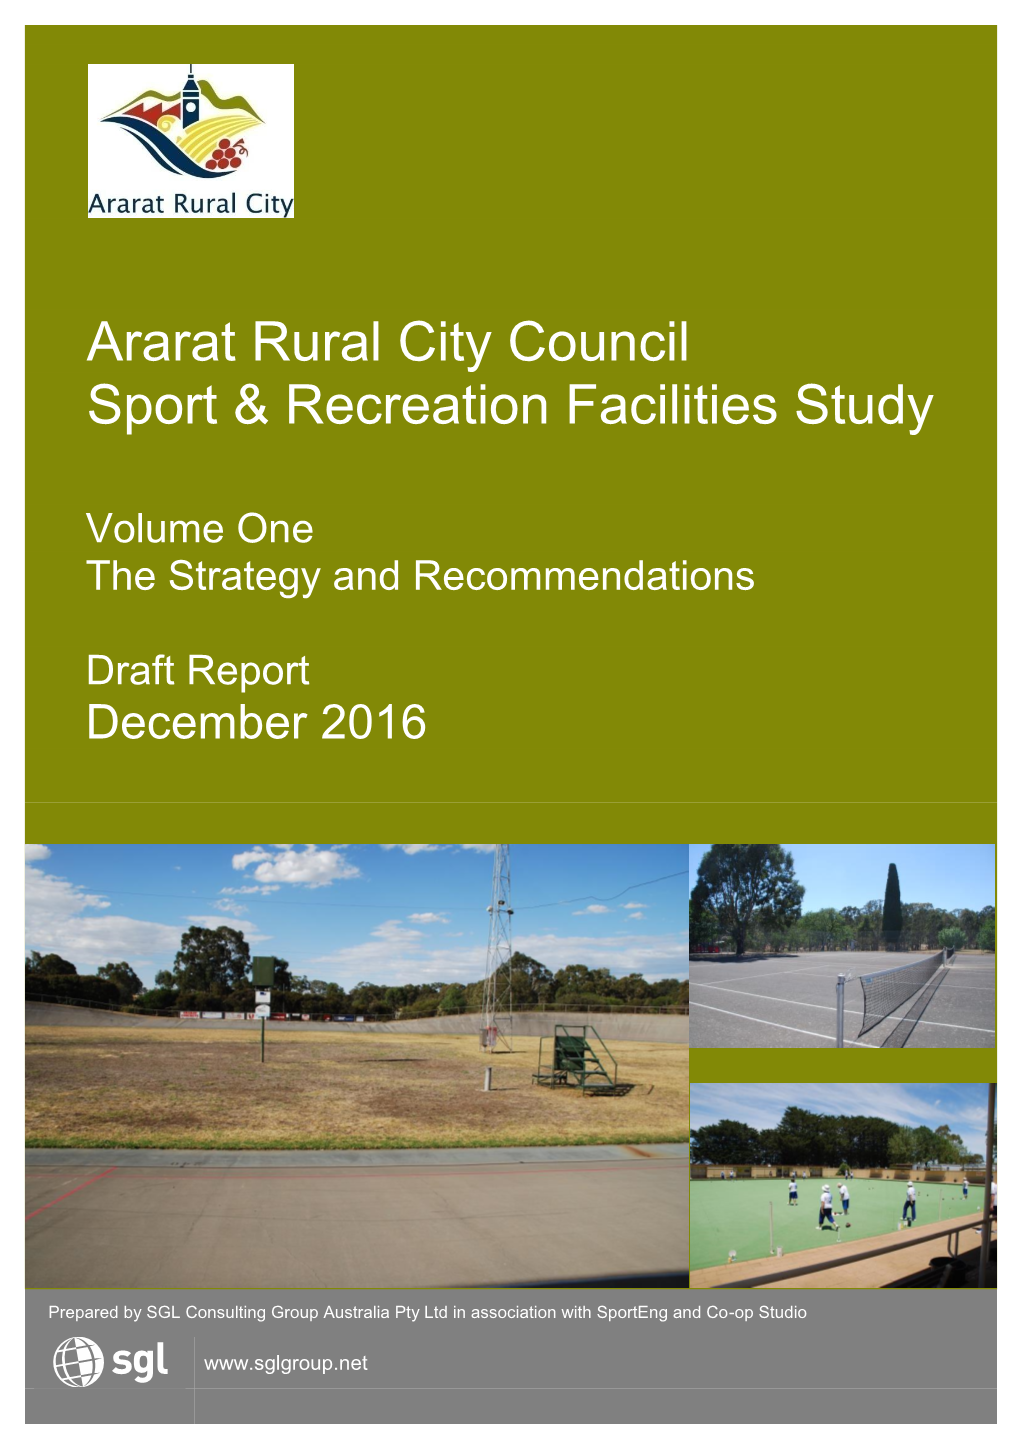 Ararat Rural City Council Sport & Recreation Facilities Study